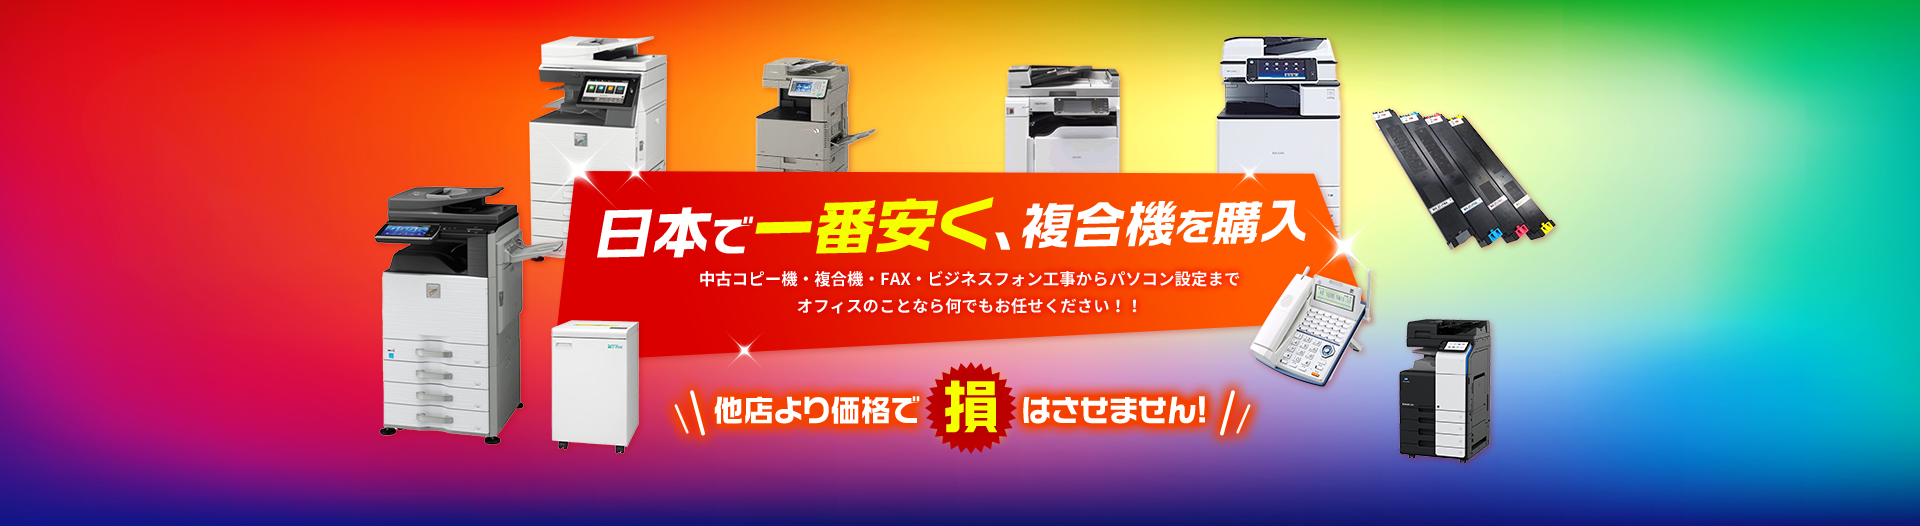 日本で一番安く、複合機を購入。中古コピー機・複合機・FAX・ビジネスフォン工事からパソコン設定までオフィスのことなら何でもお任せください！！他店より価格で損はさせません